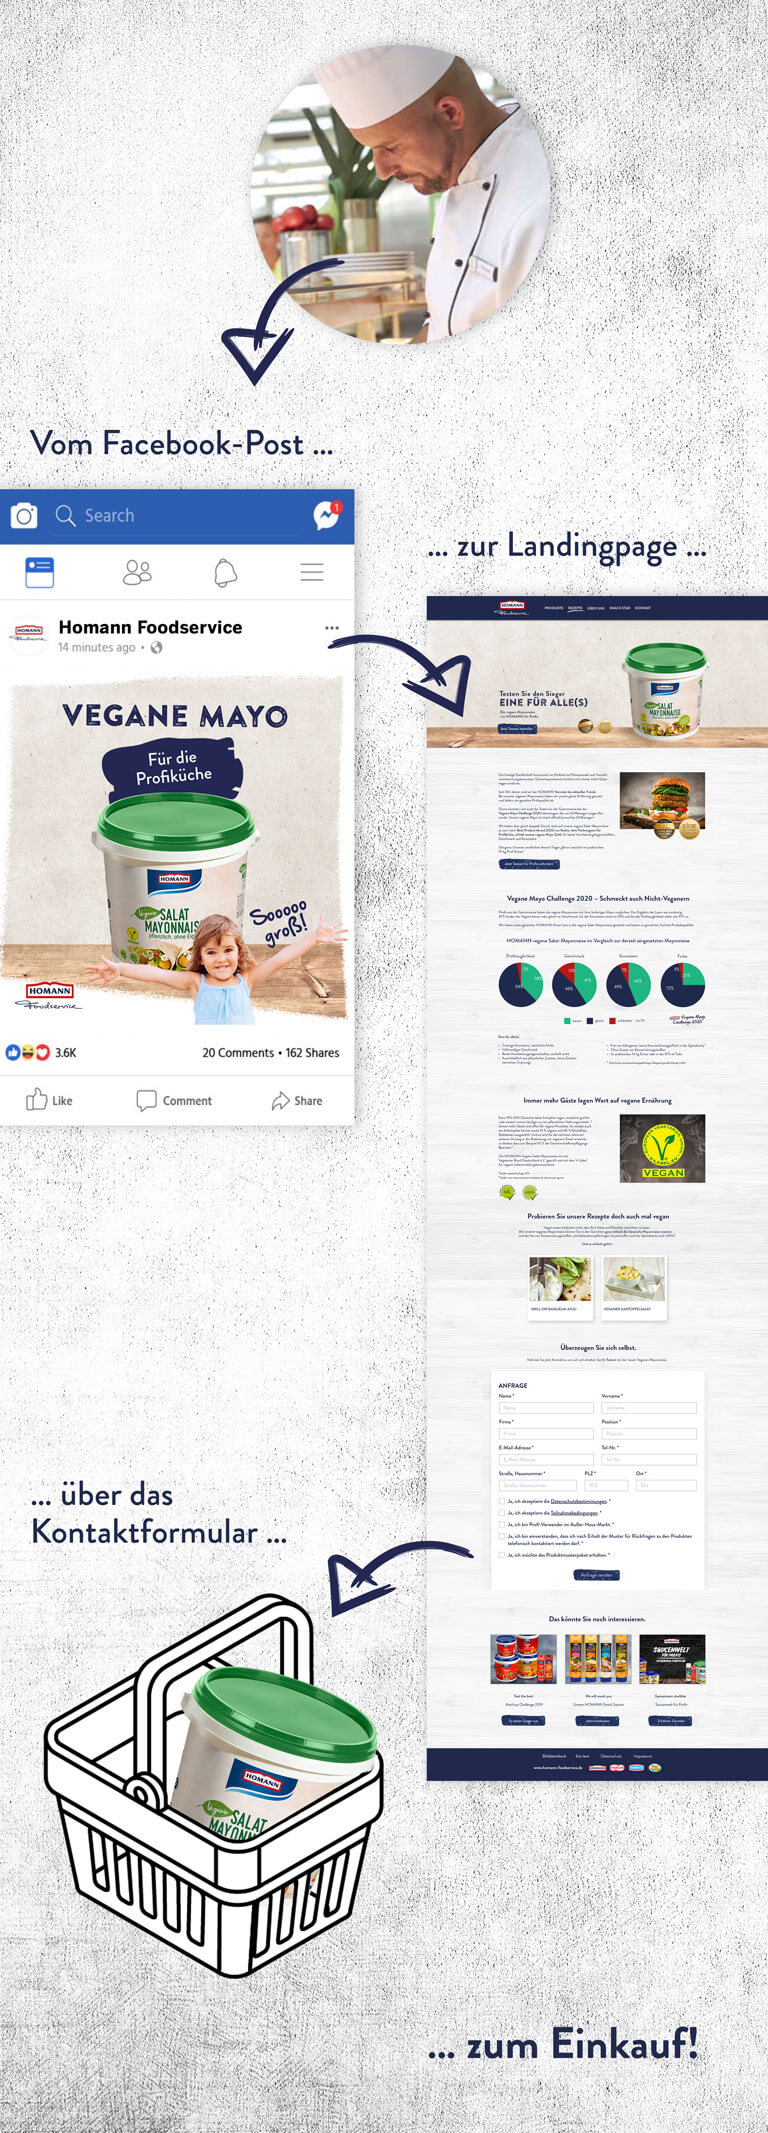 Homann Foodservice: Prozess vom Facebook-Post bis hin zum Einkauf